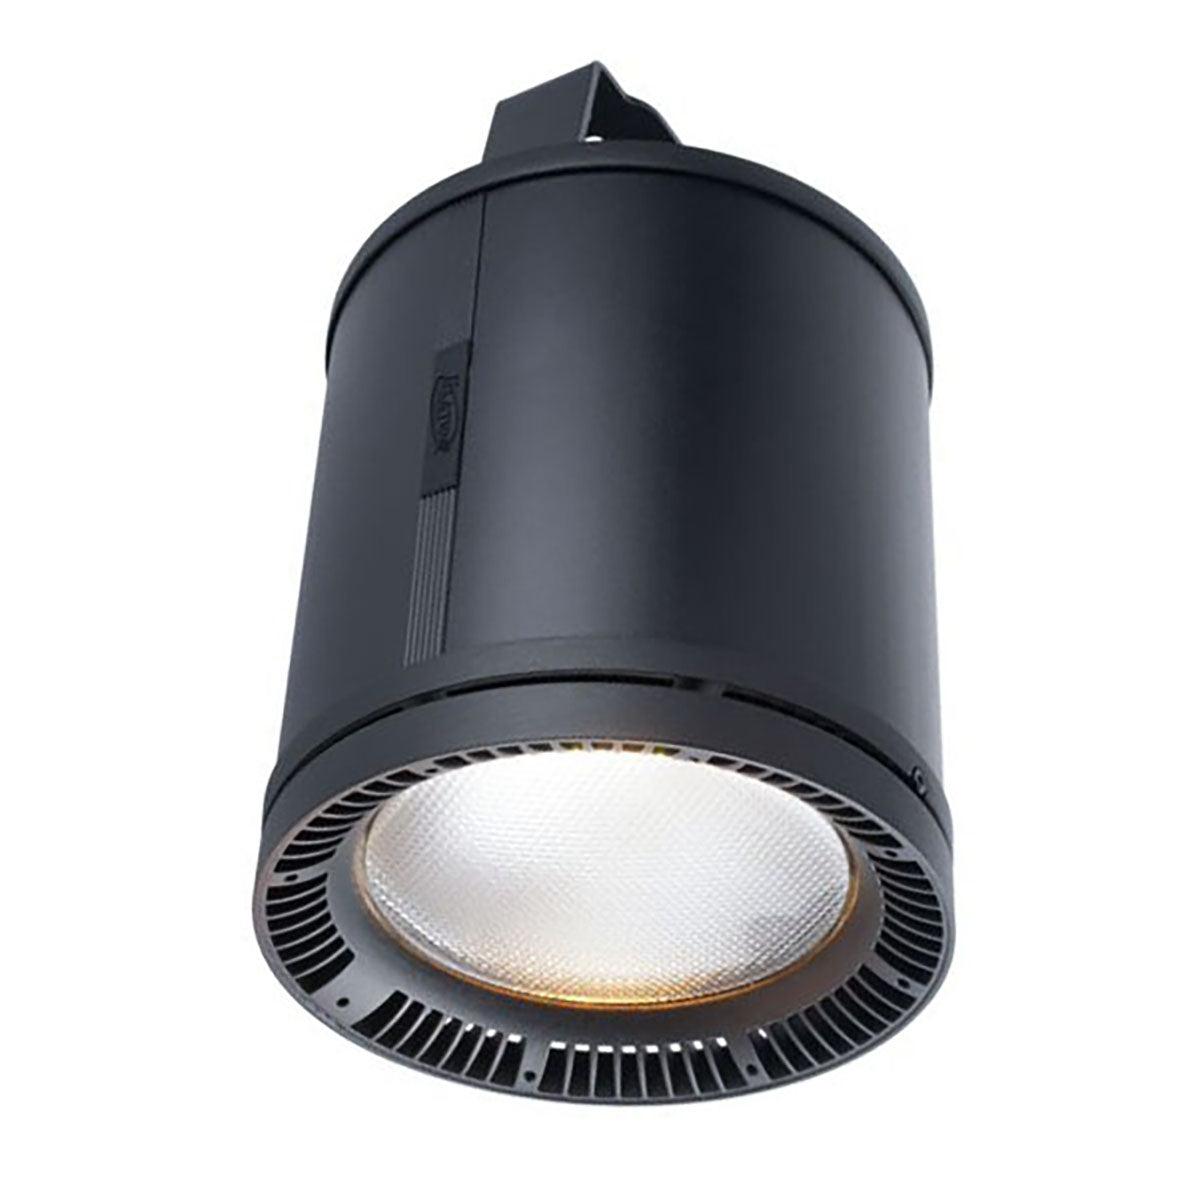 Elation FUZE PENDANT Compact - 7,200 Lumen LED House Light